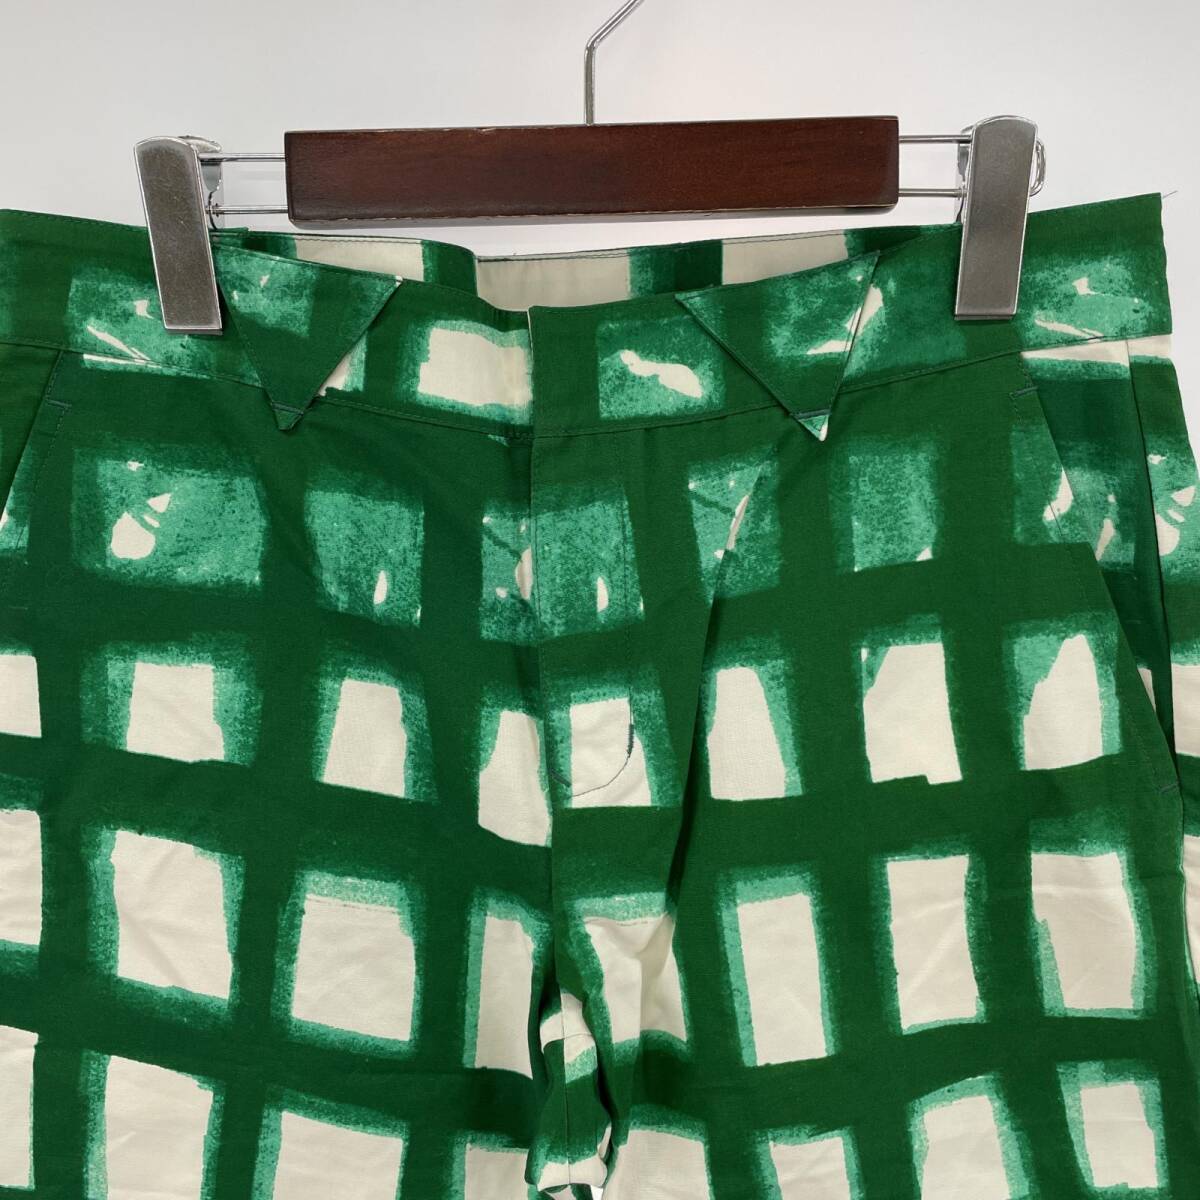  прекрасный товар TSUMORI CHISATO Tsumori Chisato шорты size2/ зеленый серия женский 